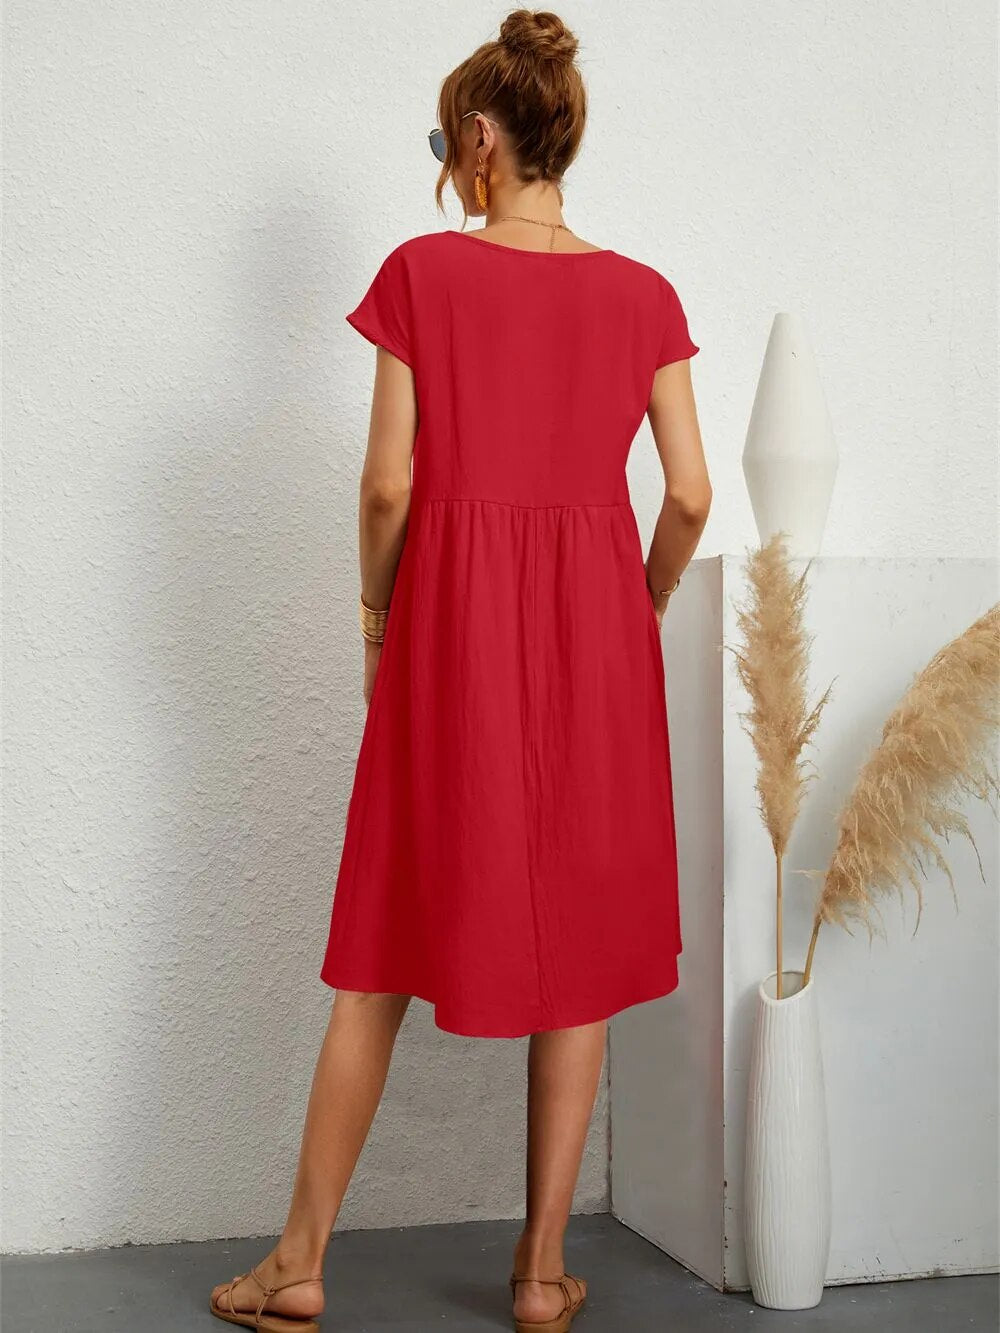 Boho Casual Plus Size Red Dress – Something She Likes Wholesale